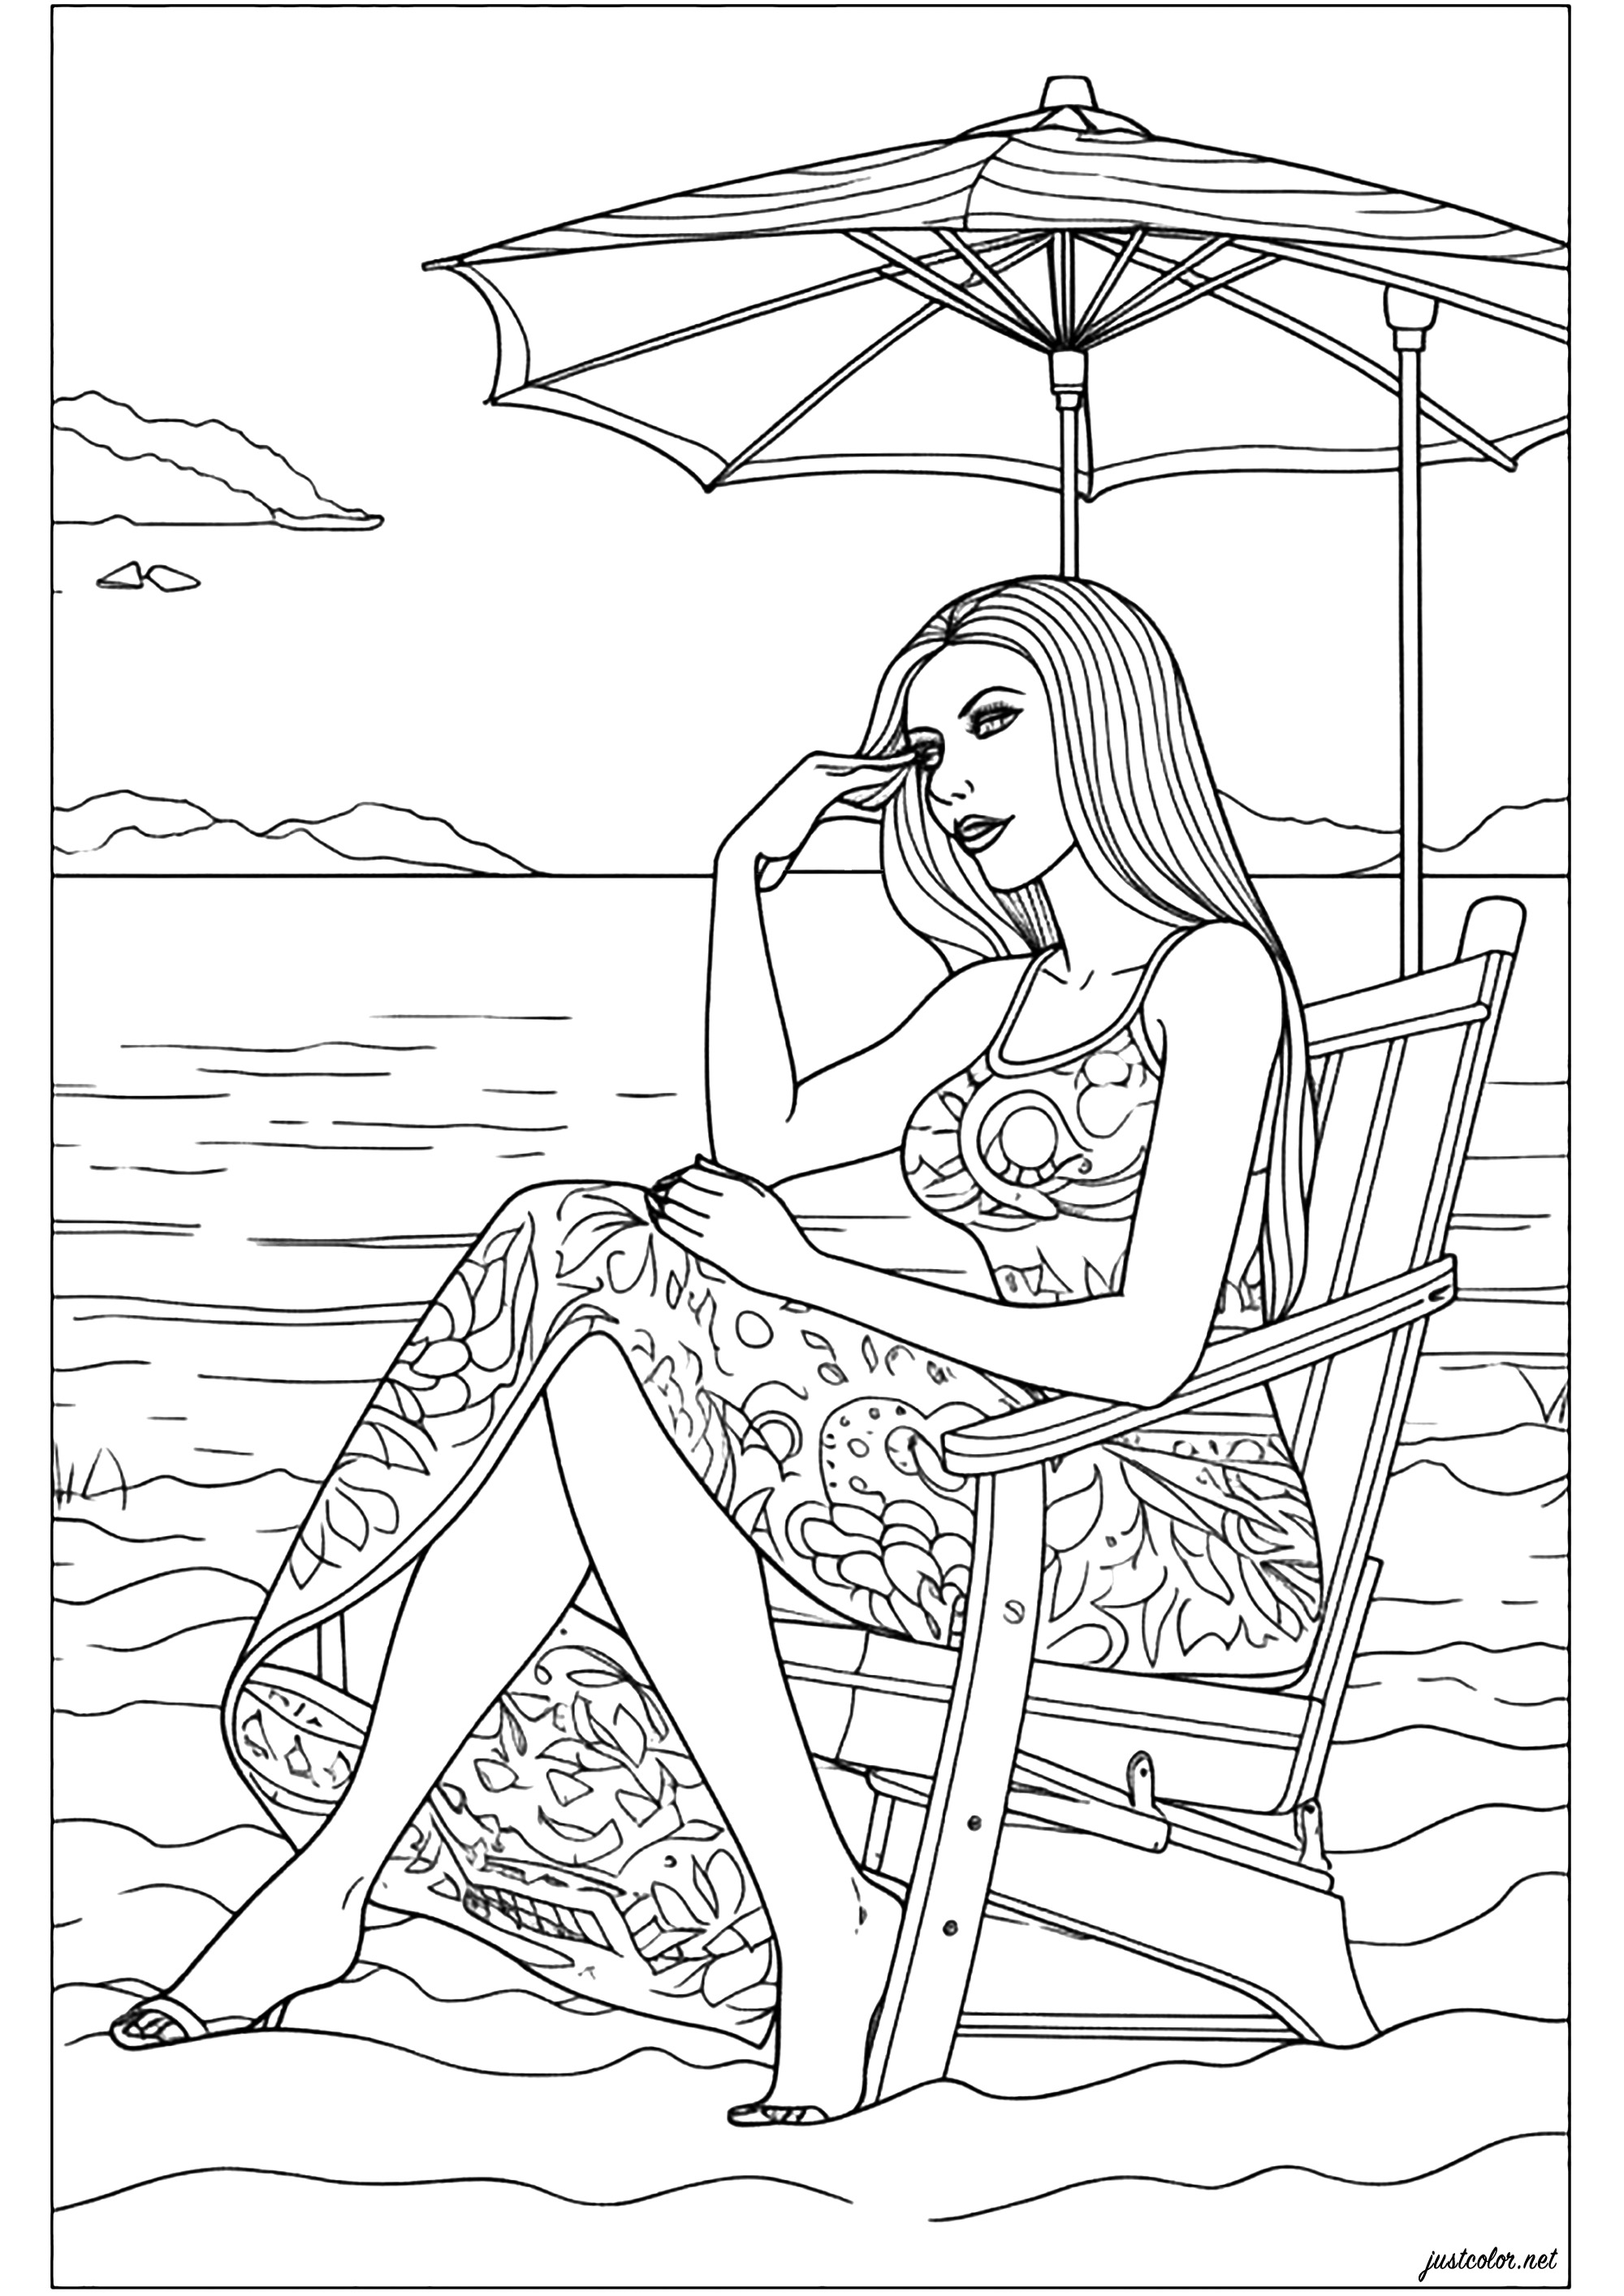 Mujer sentada en la playa, elegante y pensativa. Un original libro para colorear que te hará desear irte de vacaciones, a una playa tranquila, sólo escuchando el sonido de las olas...